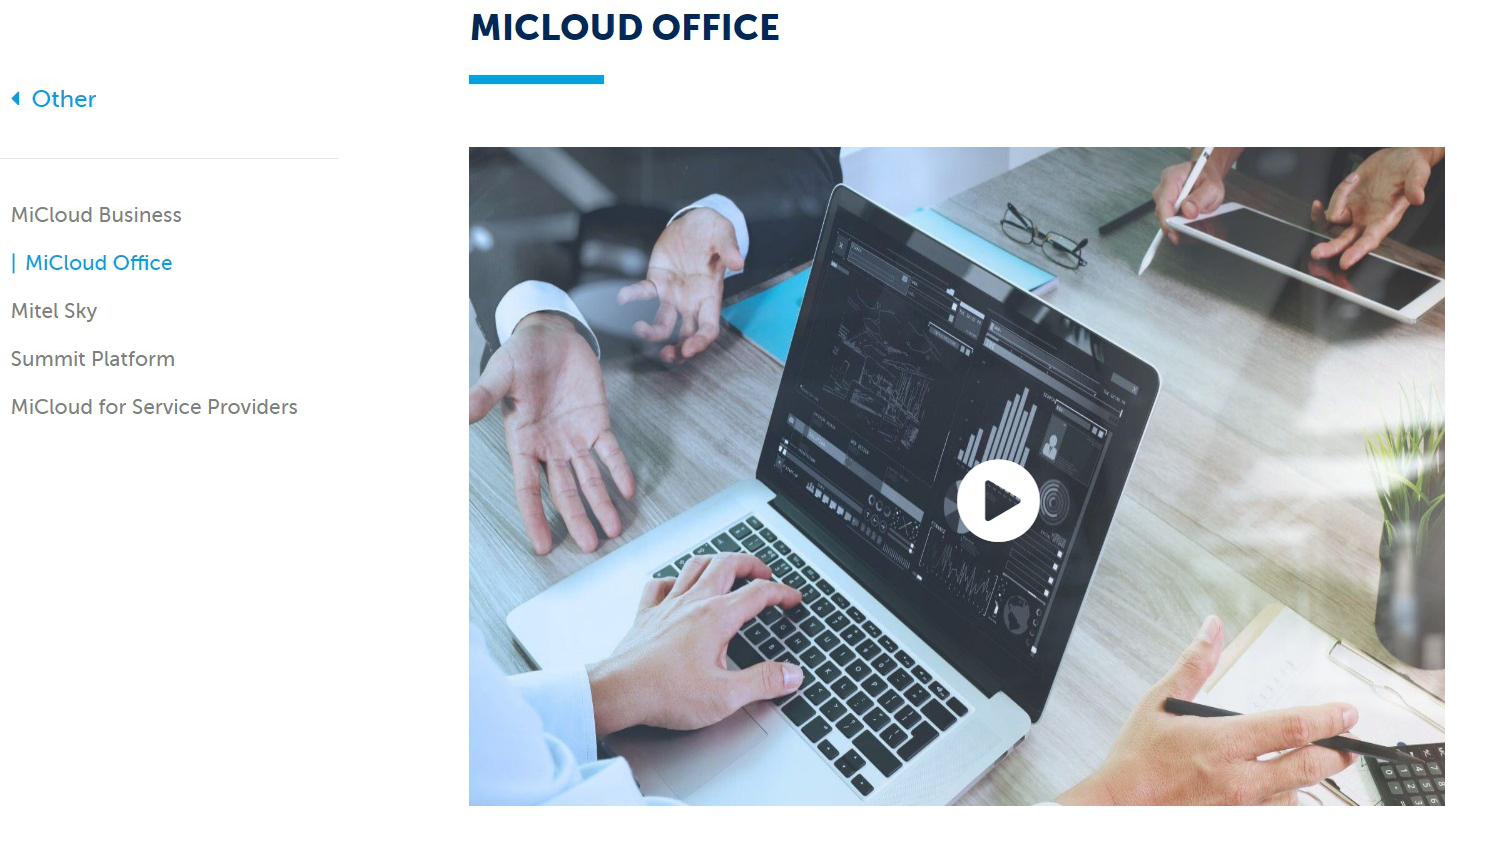 MiCloud Office